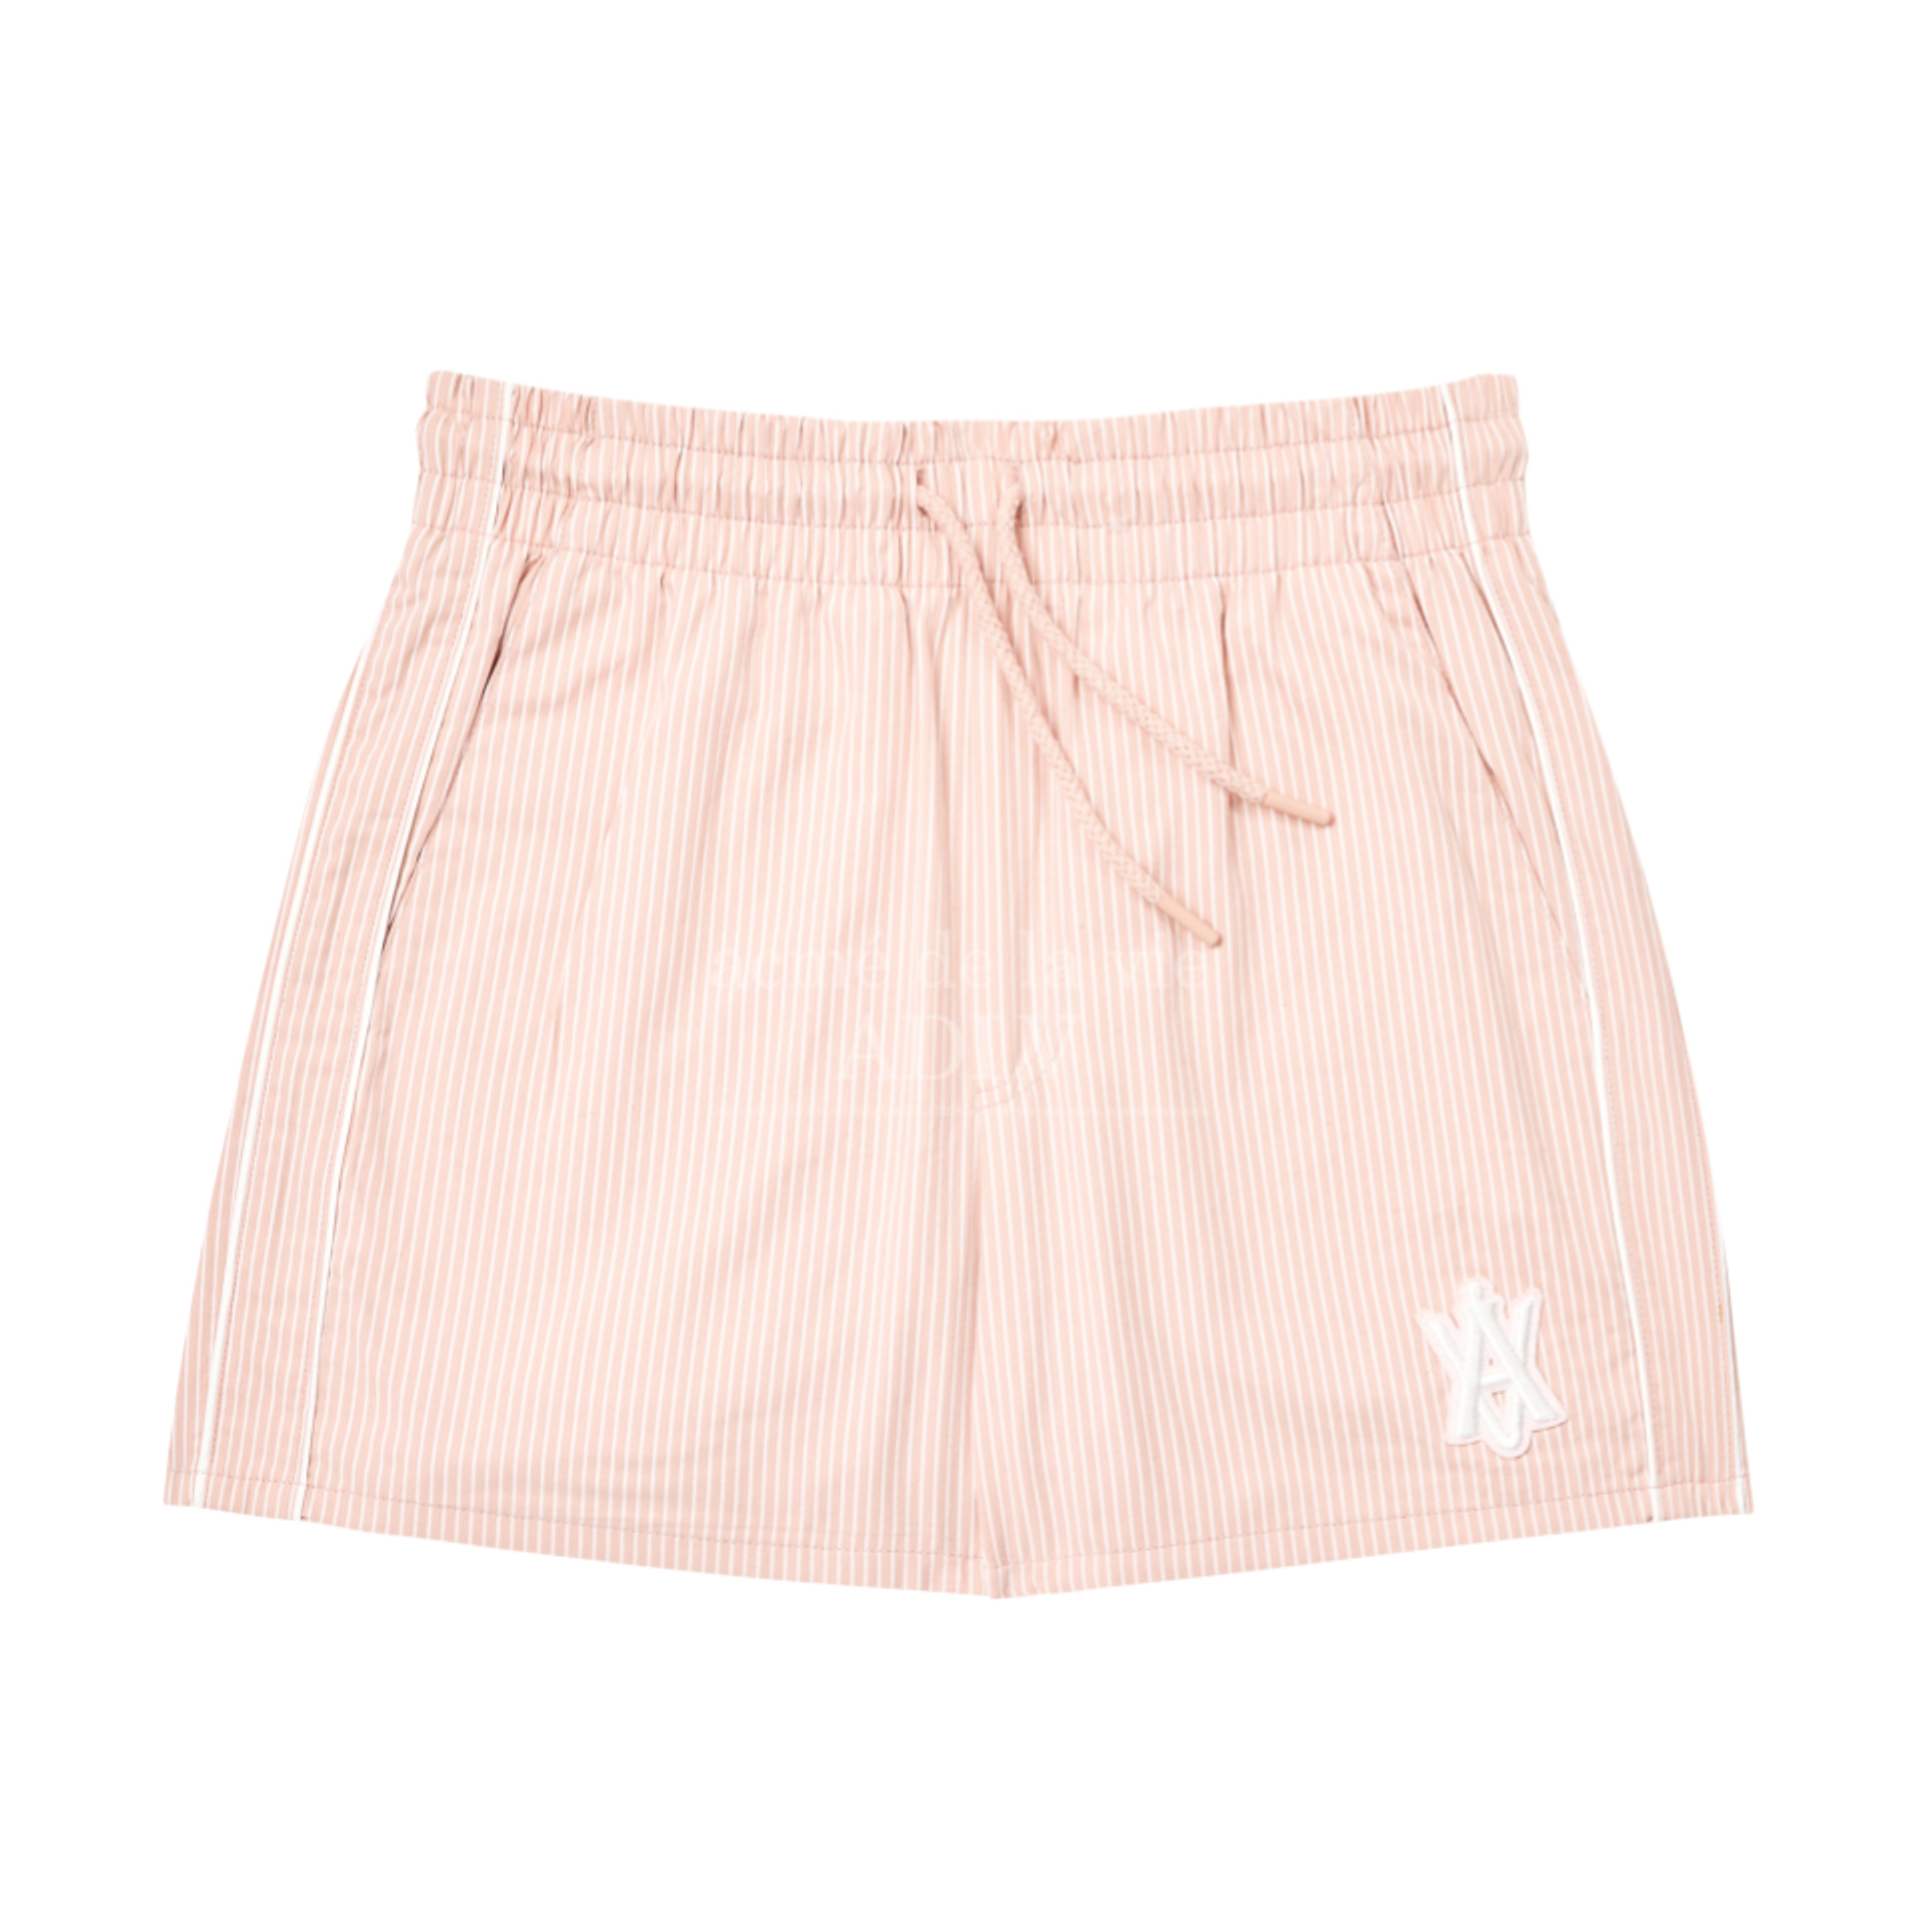 Acme De La Vie A Logo Emblem Patch Stripe Short Pants 'Pink' 